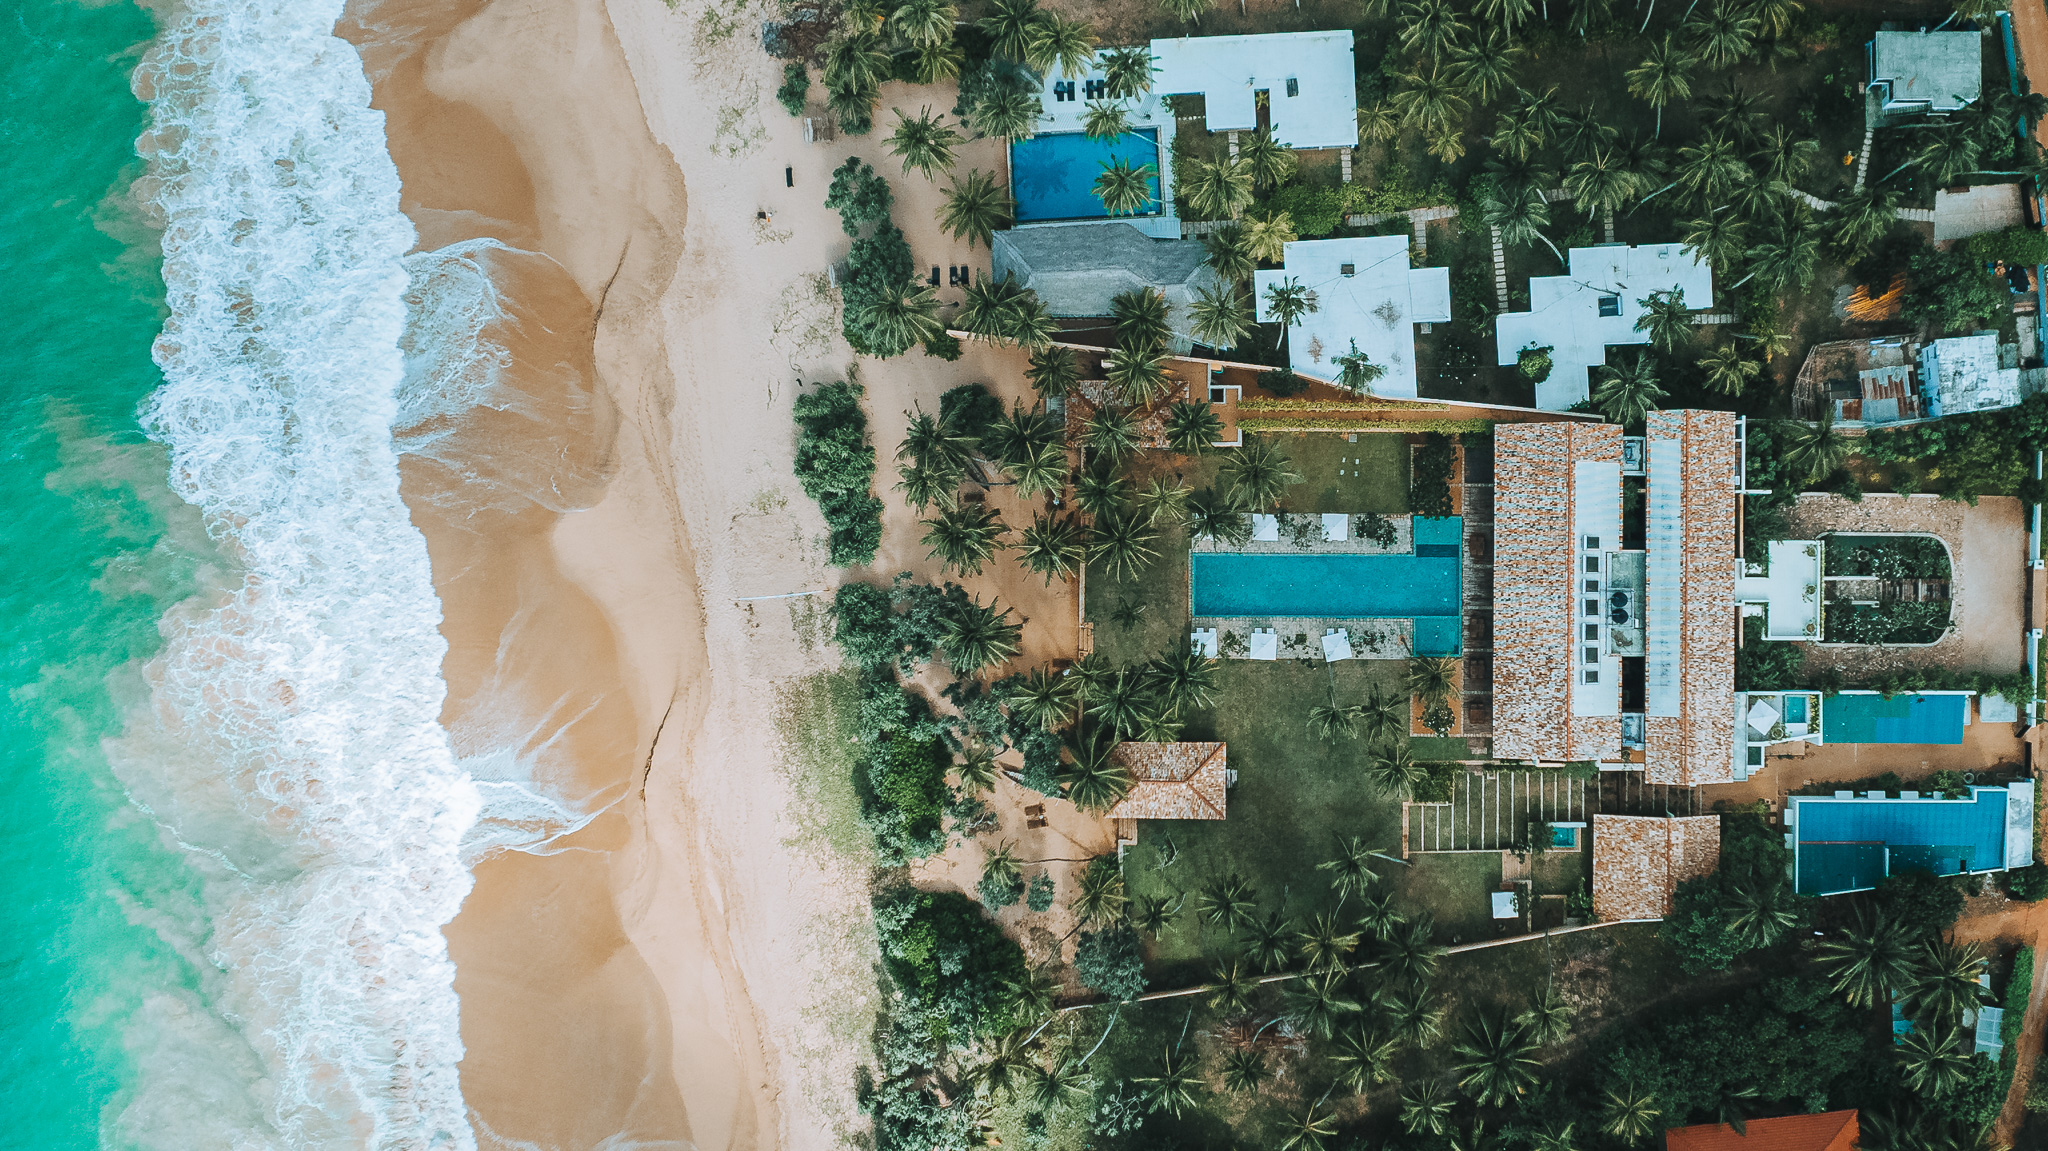 Das versteckte Juwel von Sri Lanka: Kayaam House – Eine Oase an der Südküste.